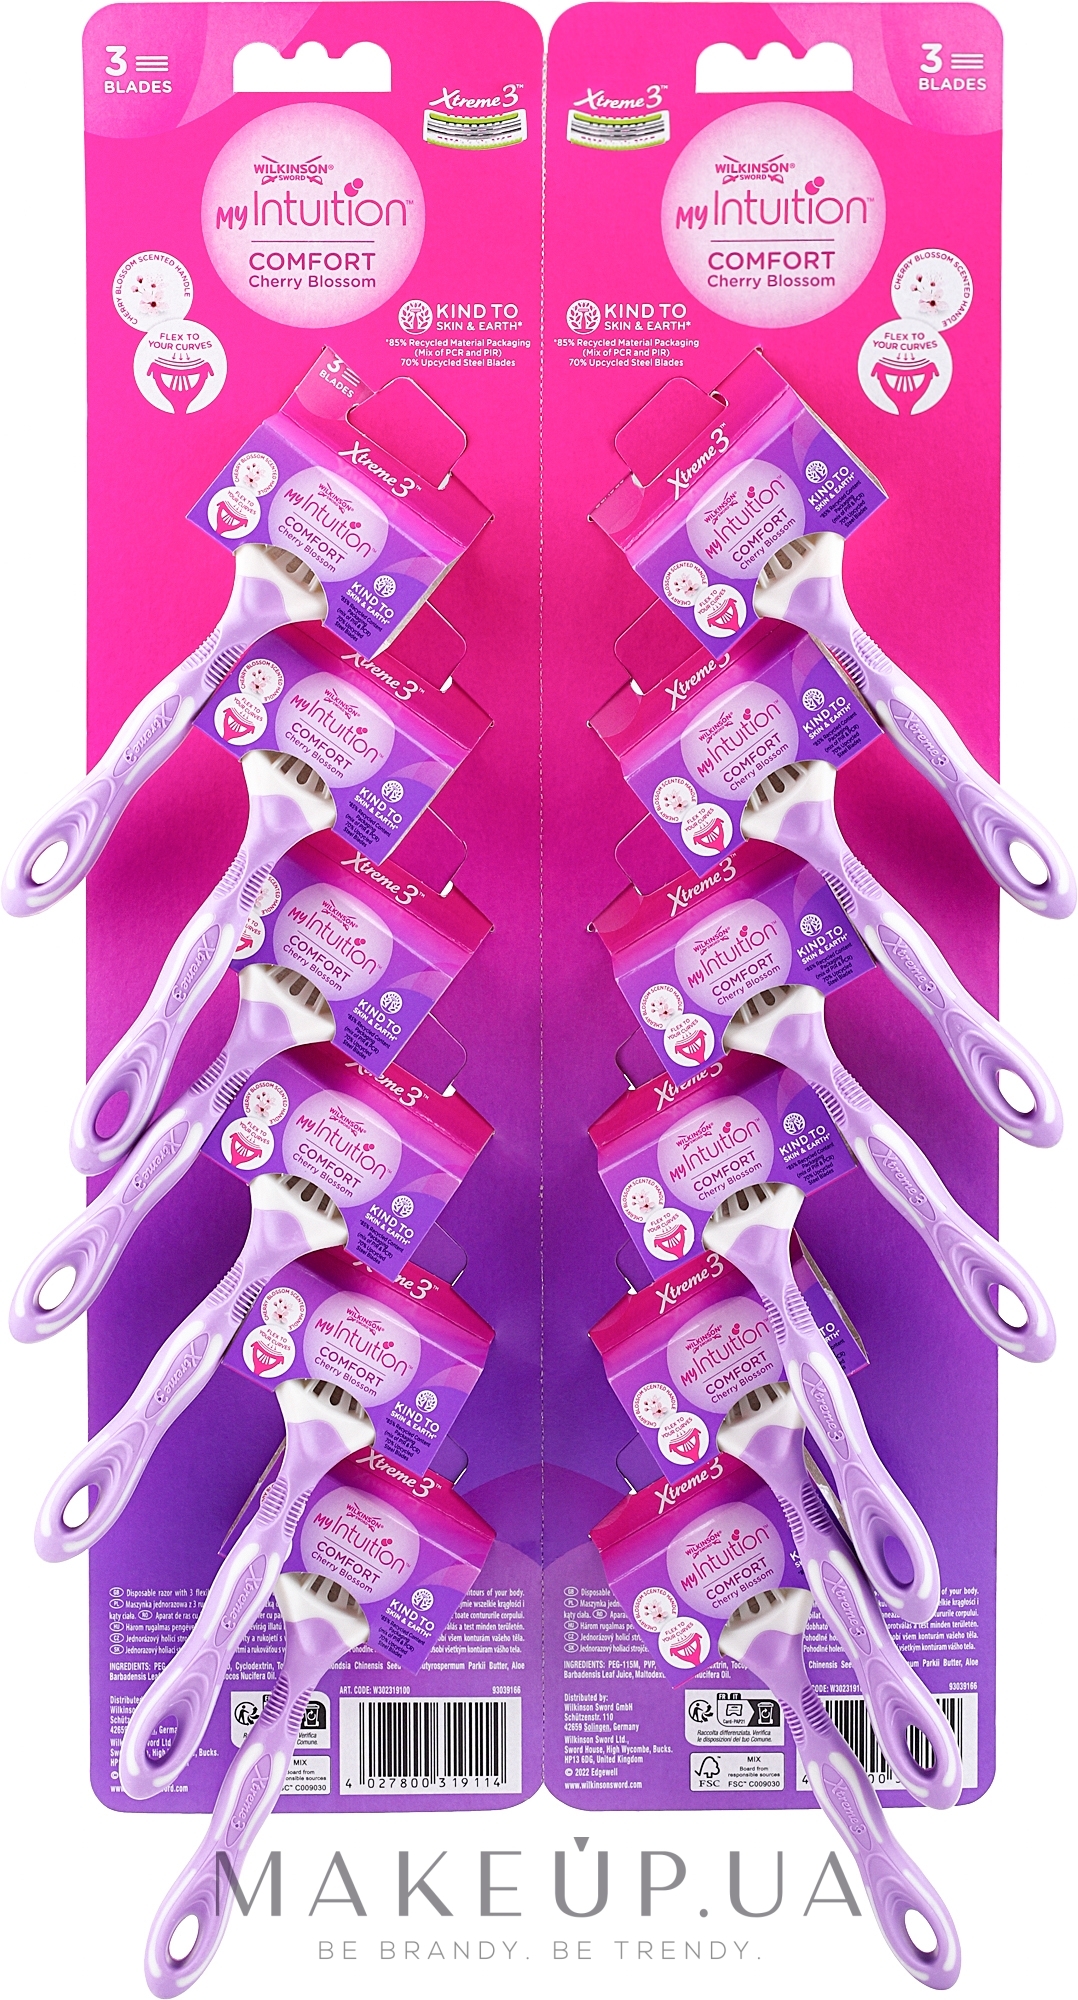 Жіночі одноразові бритви з трьома лезами, 6 шт. - Wilkinson Sword Xtreme 3 My Intuition Comfort Cherry Blossom — фото 12шт